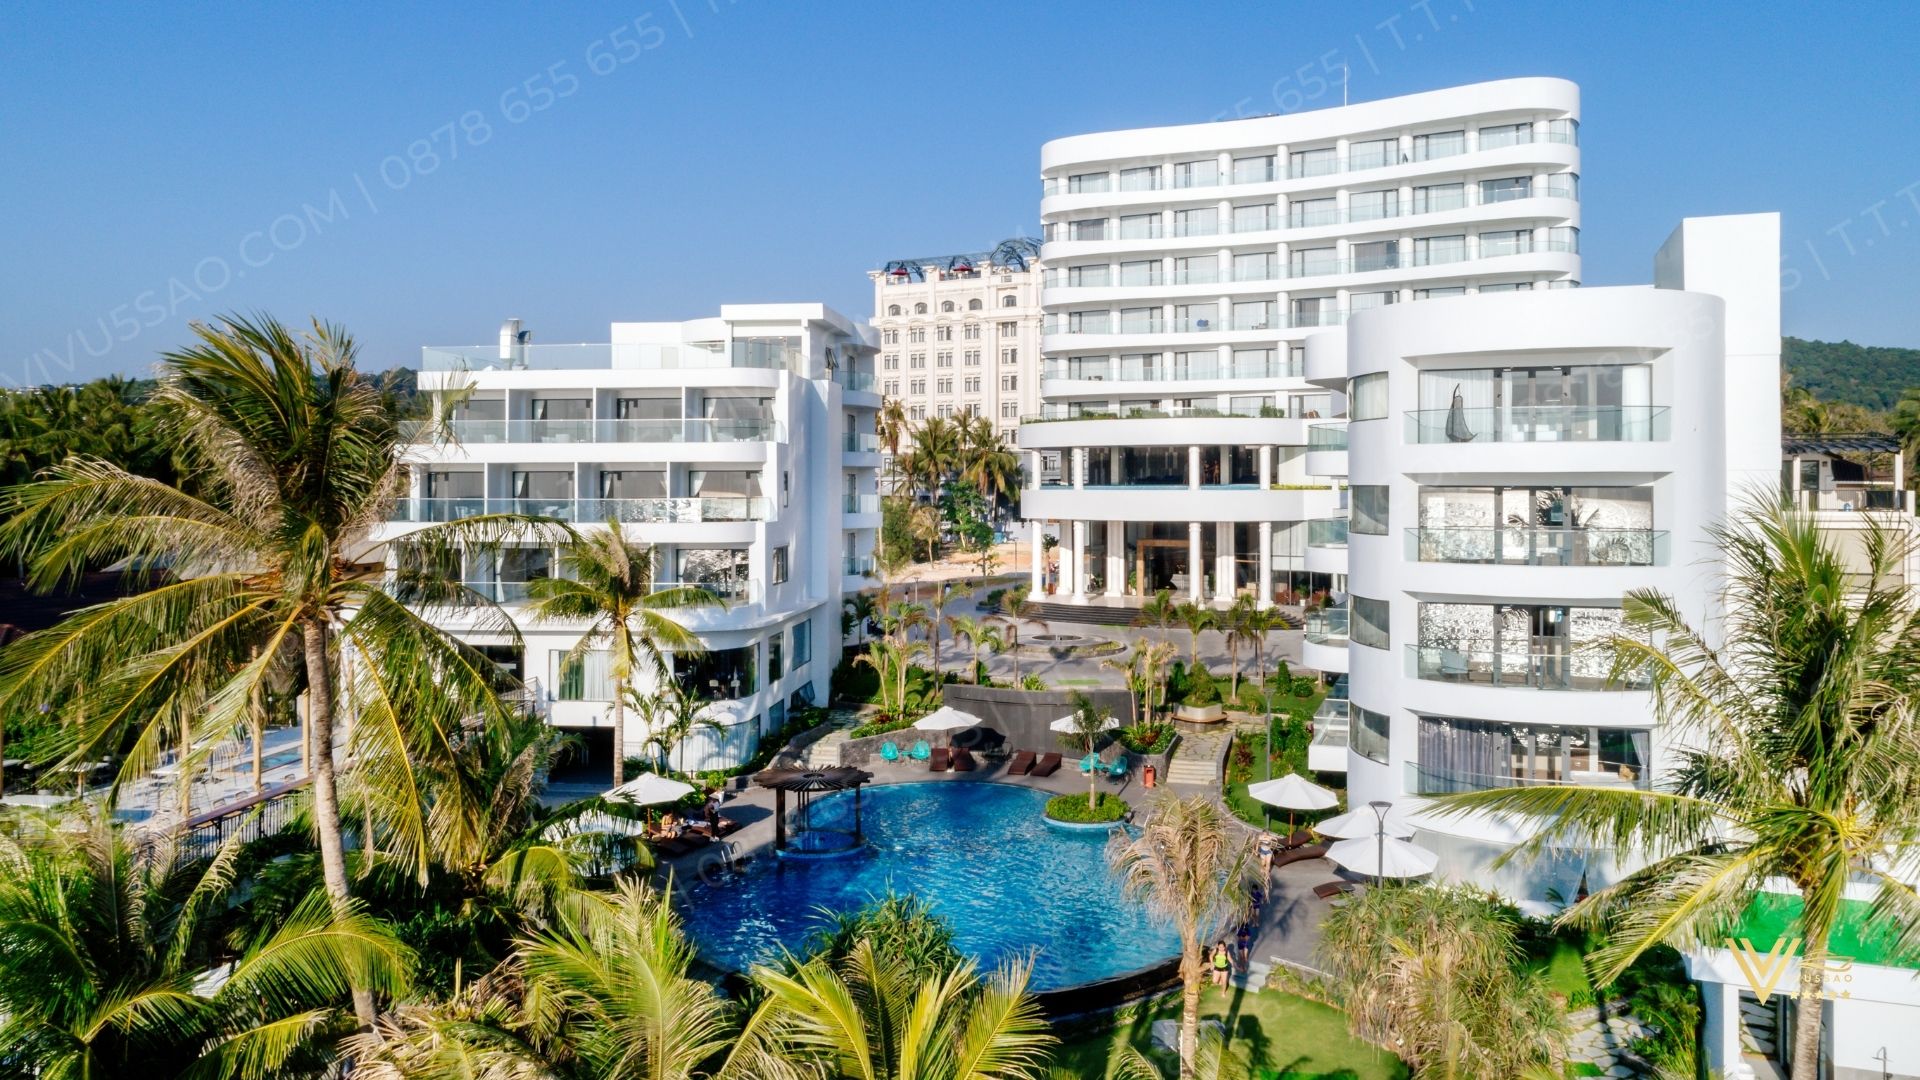 Khám Phá Khu Nghỉ Dưỡng Sunset Beach Resort & Spa Phú Quốc 2024